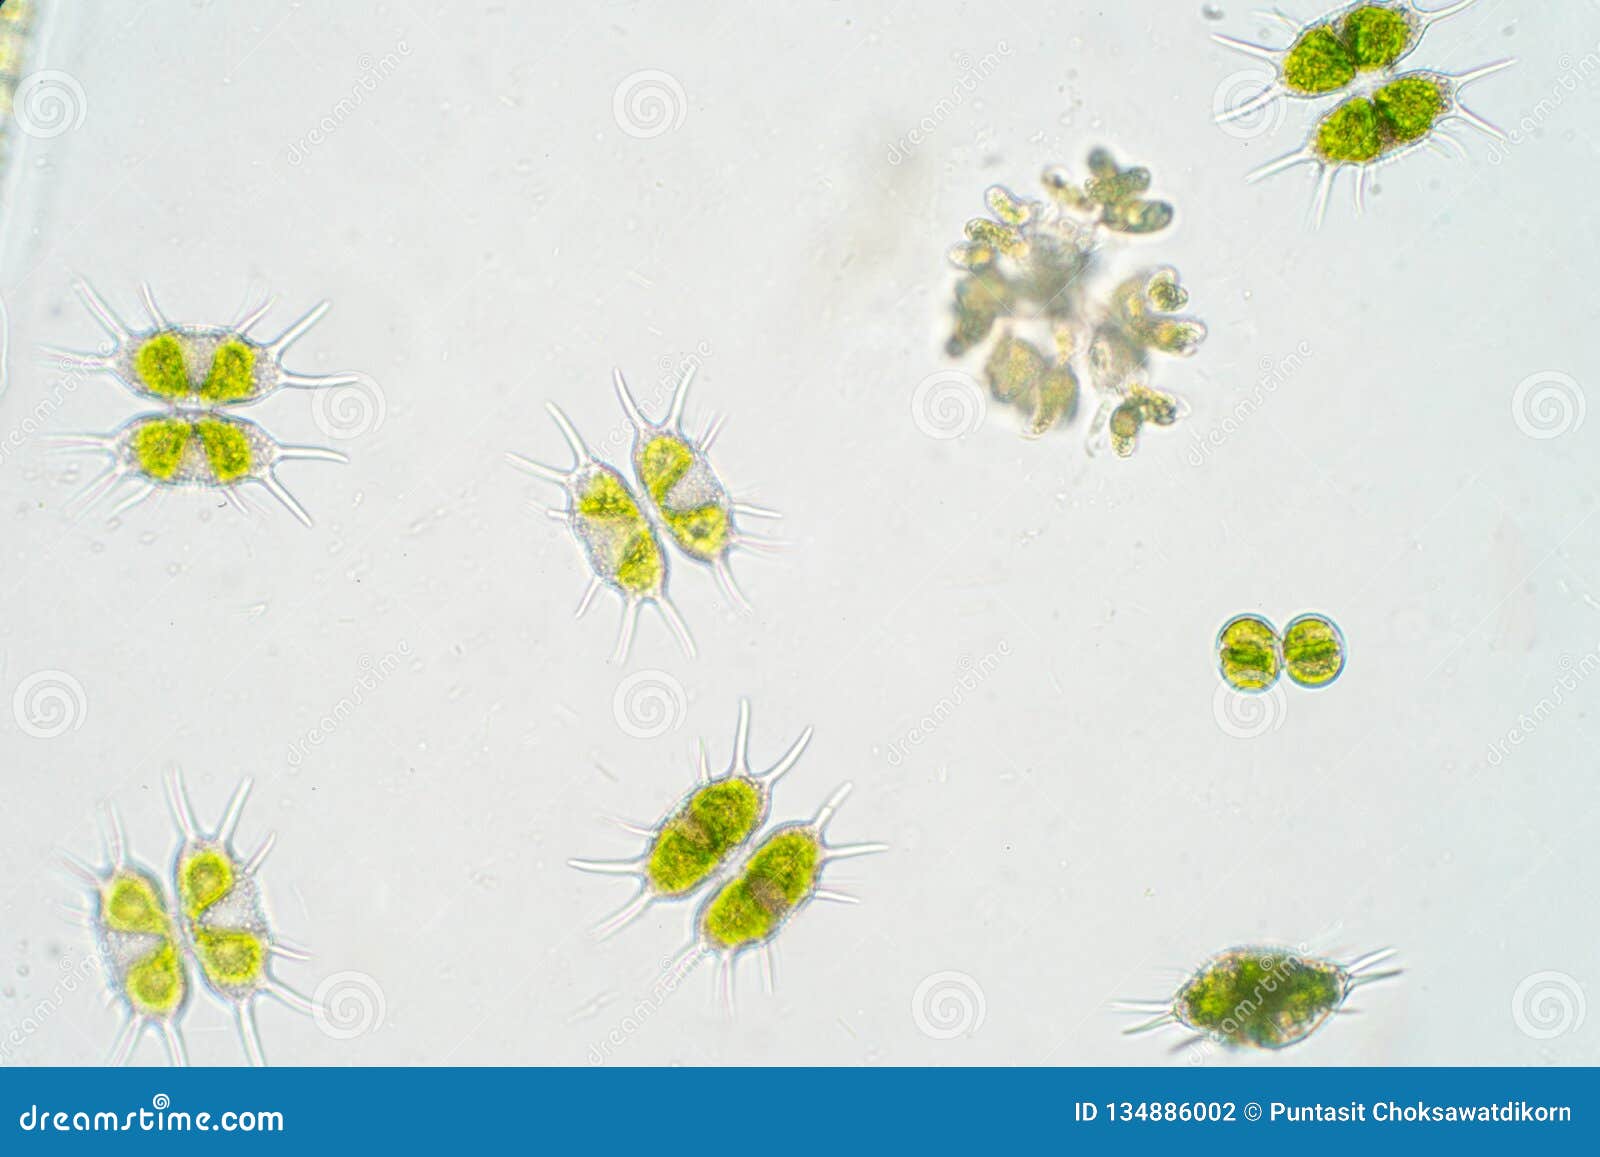 freshwater phytoplankton